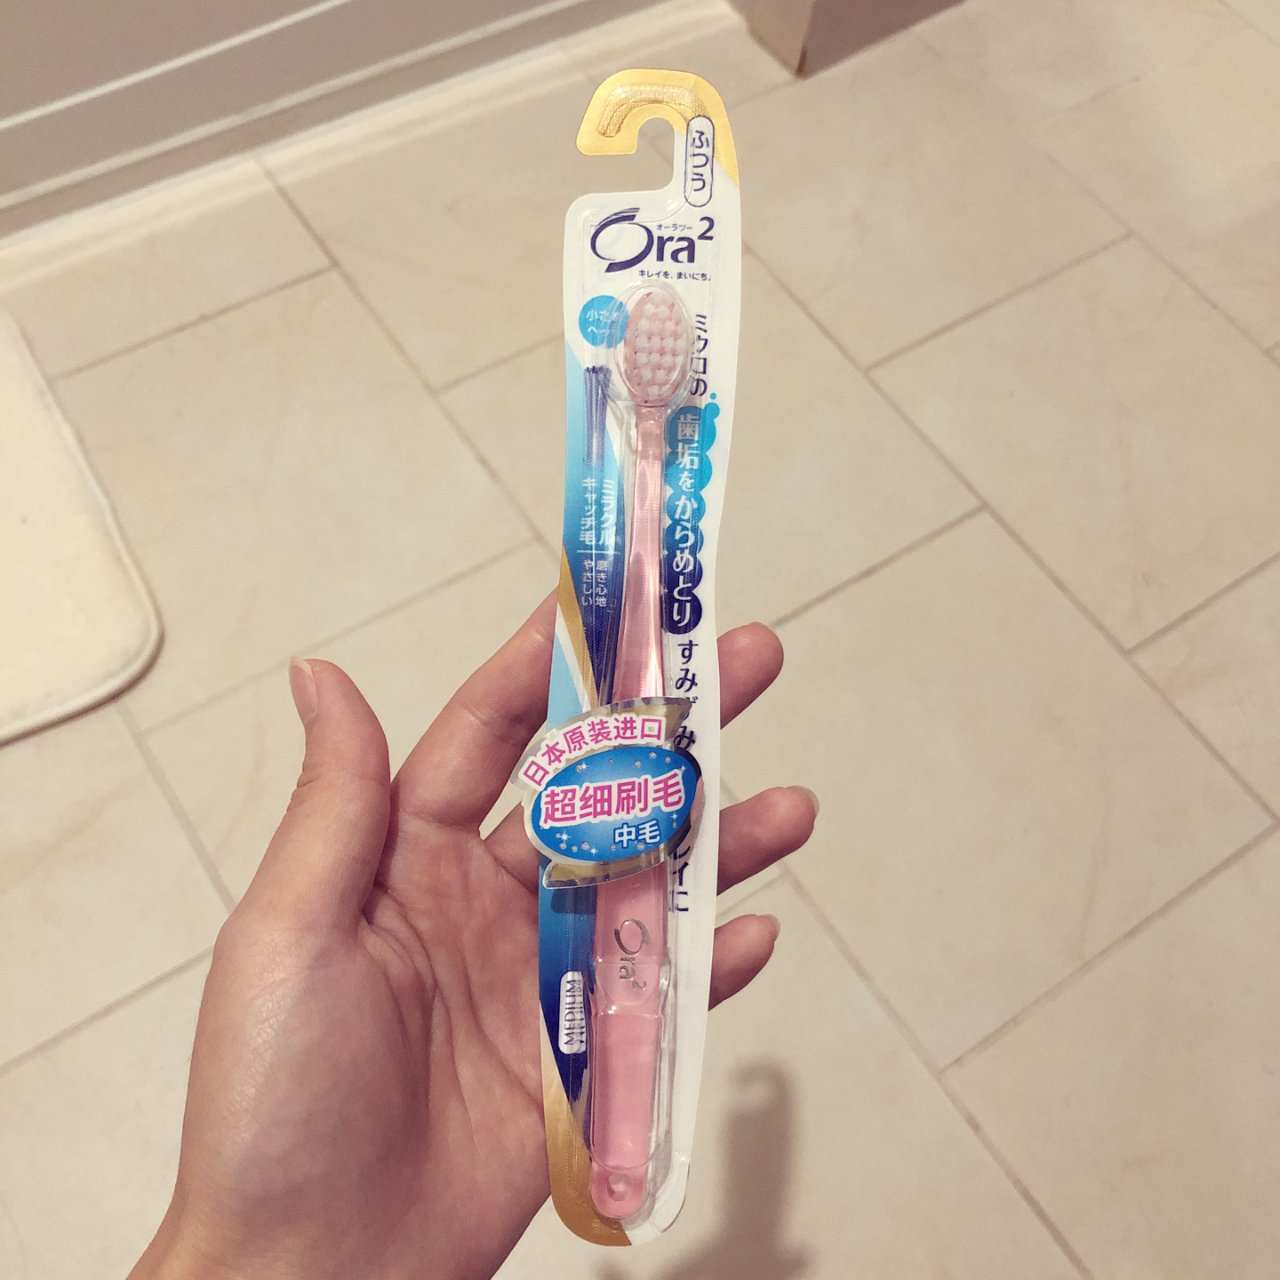 日本Ora2专业口腔护理牙刷...